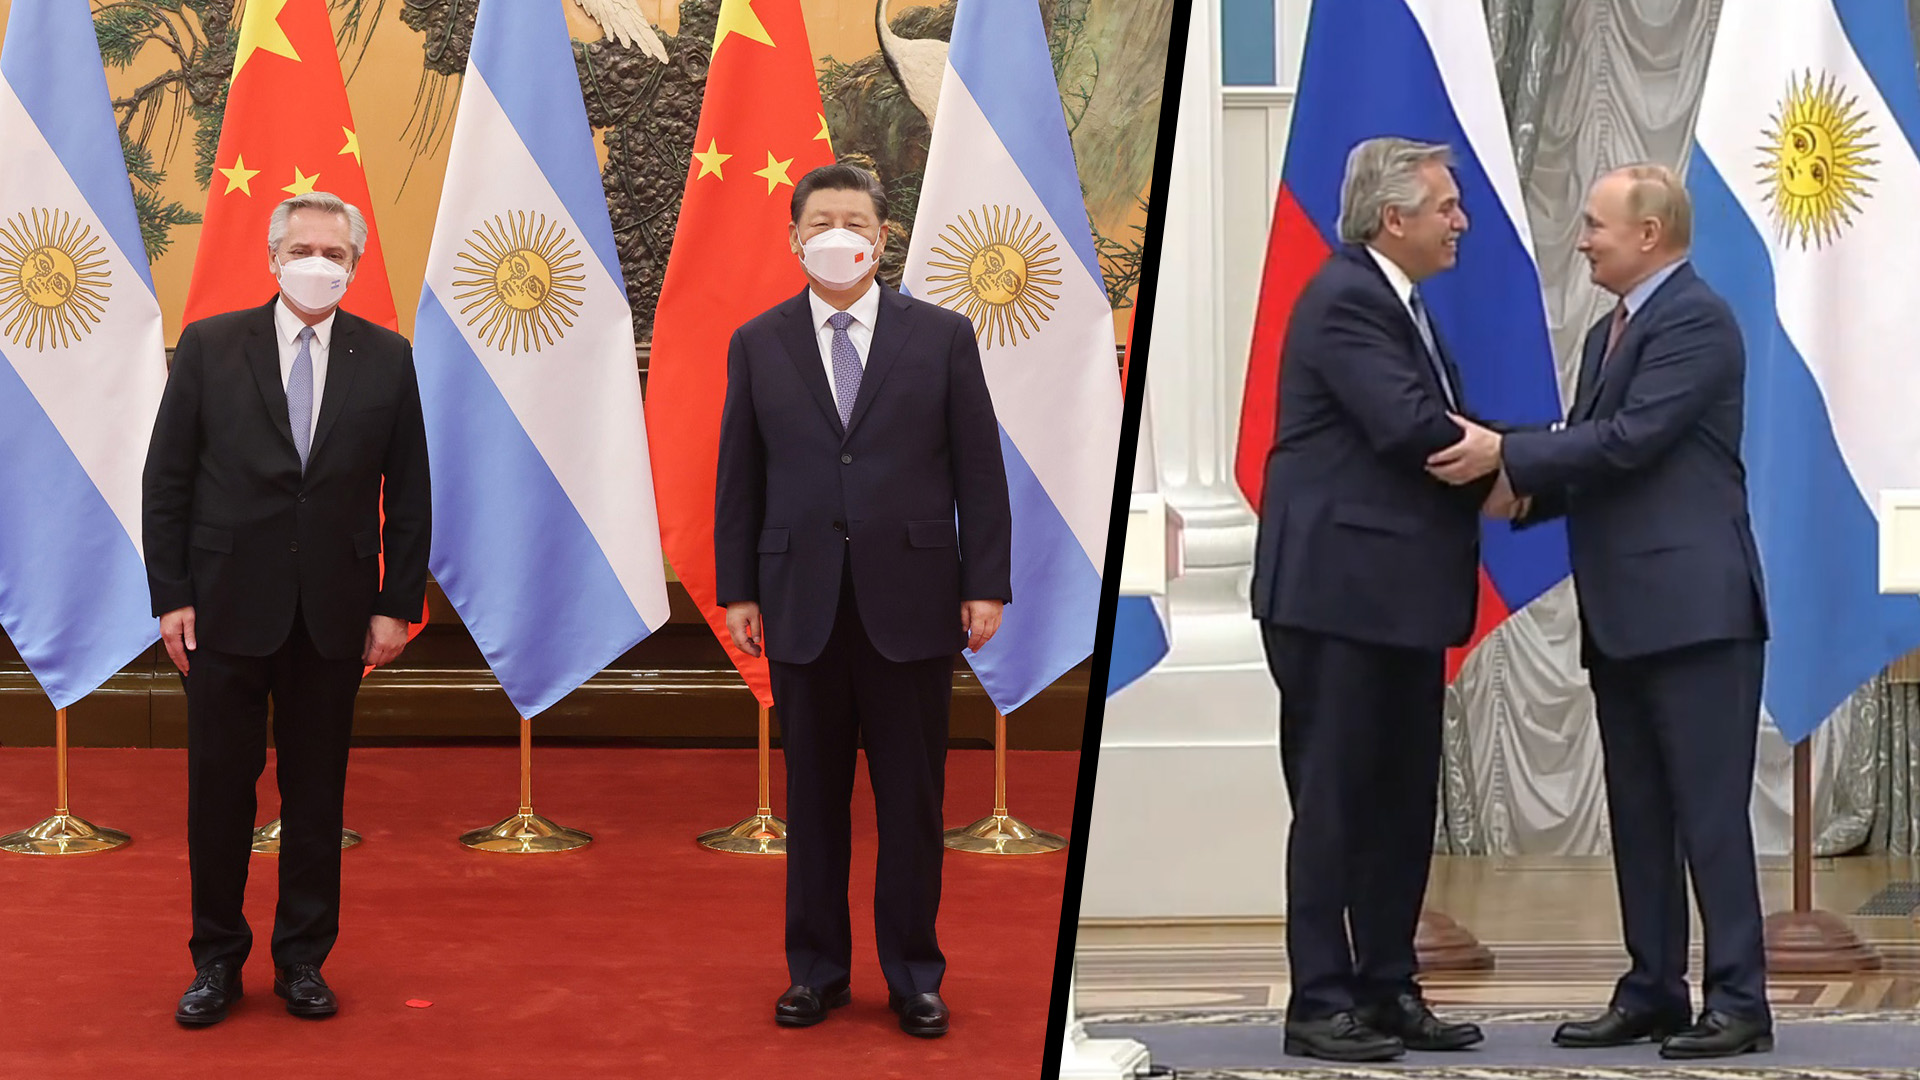 Argentina-China-Russia-belt-road-initiative.jpg